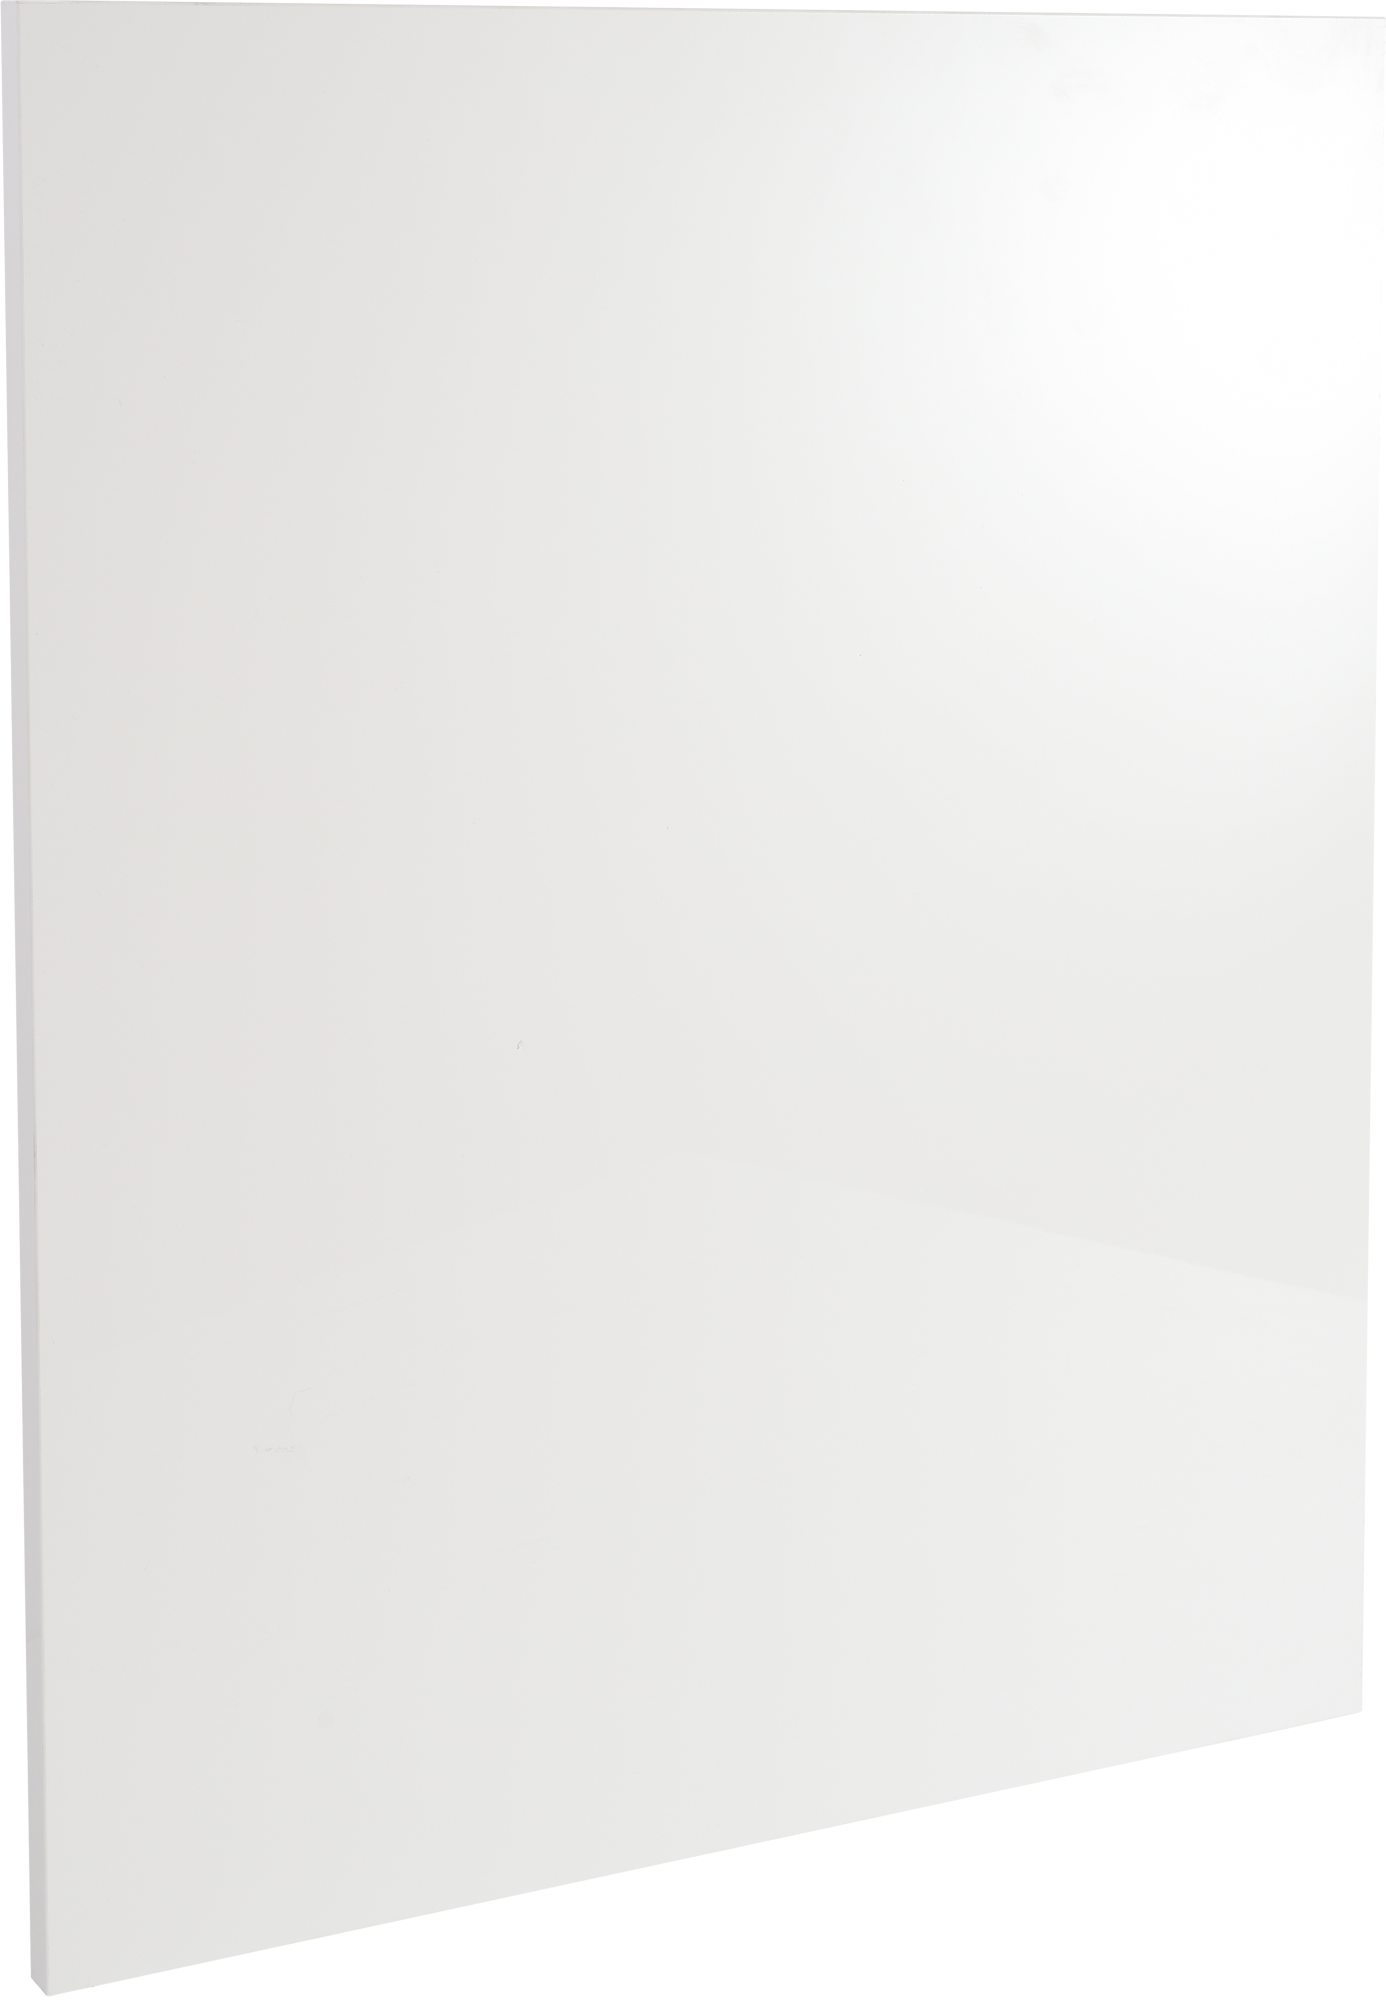 Frente de cajón de cocina atenas blanco brillo h 76.8 x l 60 cm